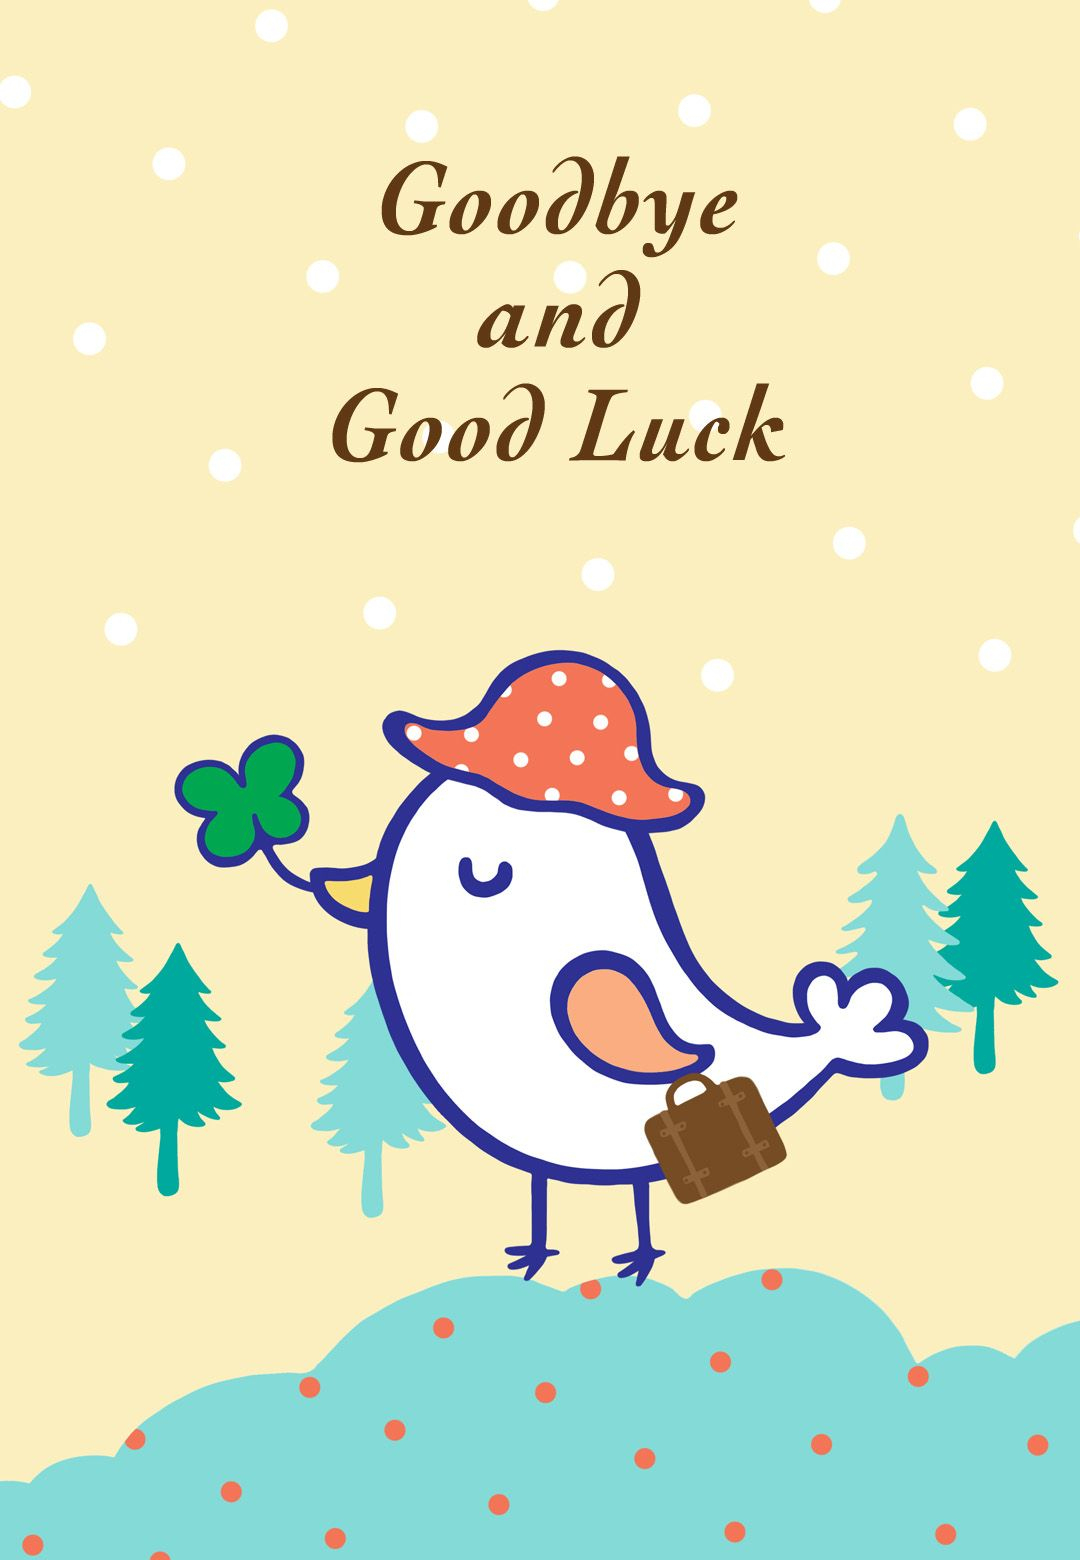 Free Printable Goodbye And Good Luck Greeting Card | Littlestar - Free Printable Good Luck Cards